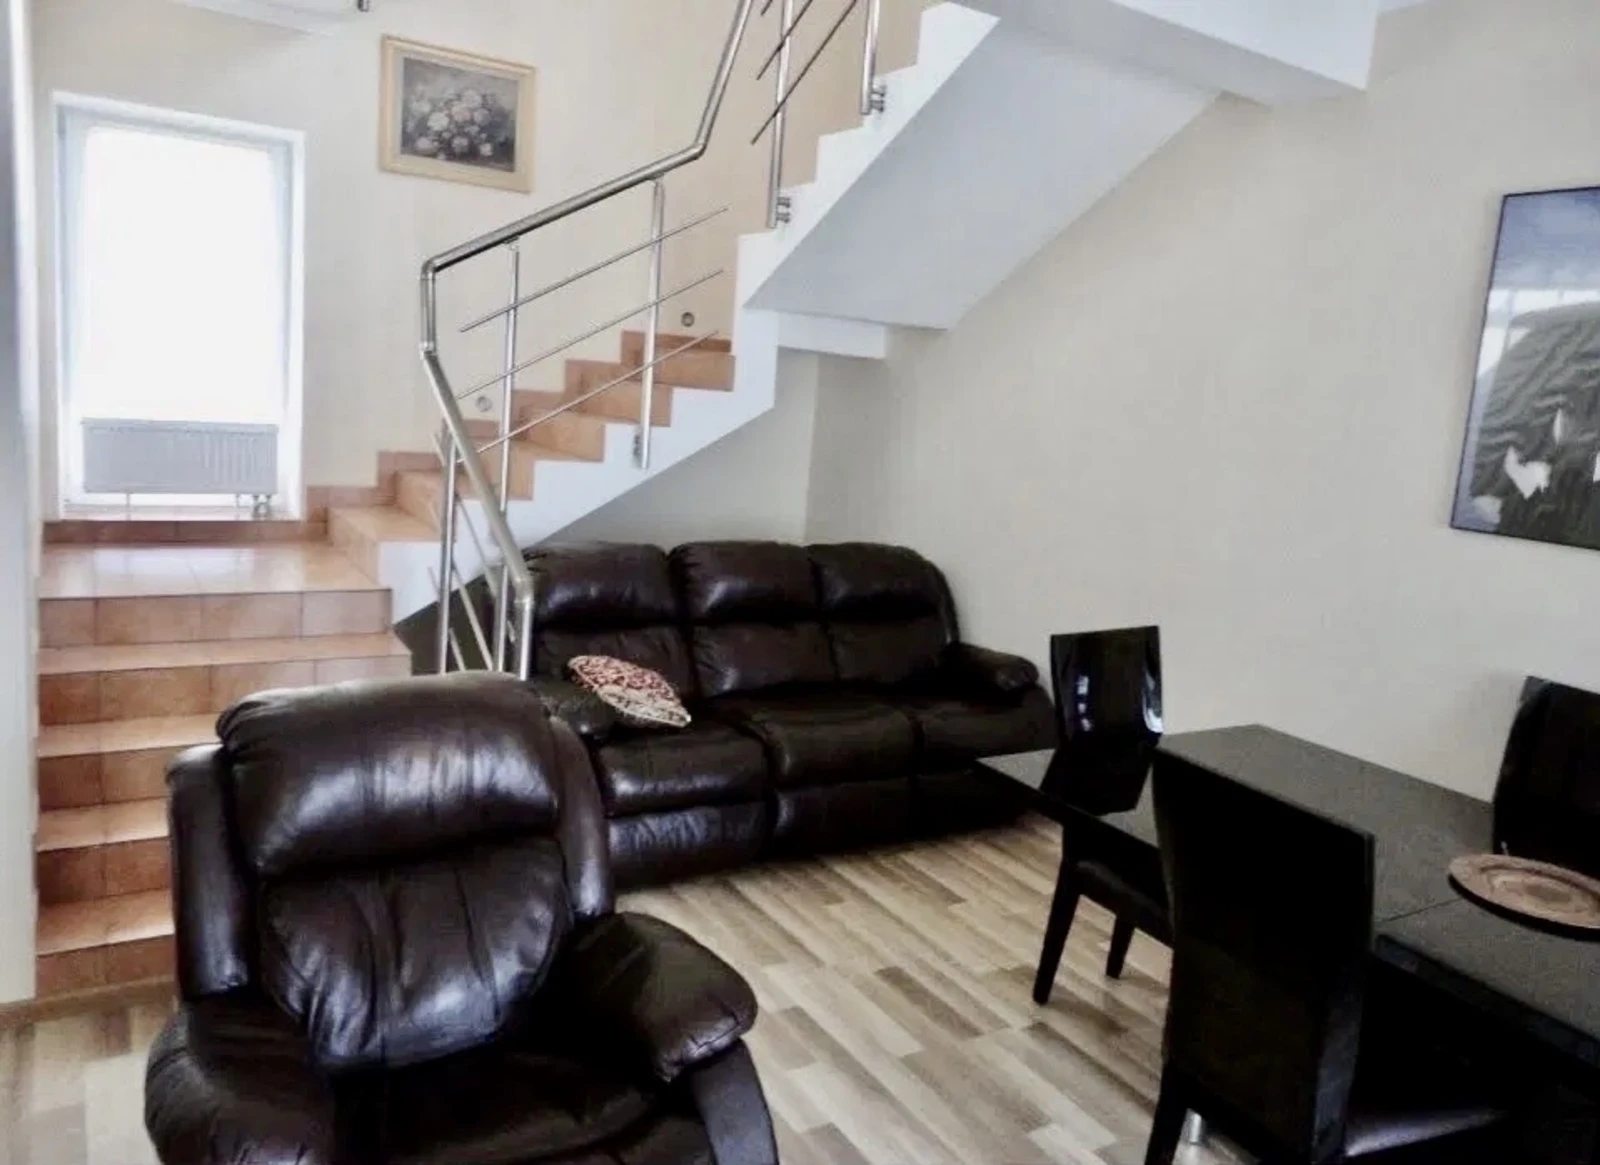 House for sale. 115 m², 2 floors. Kurortna vul., Odesa. 